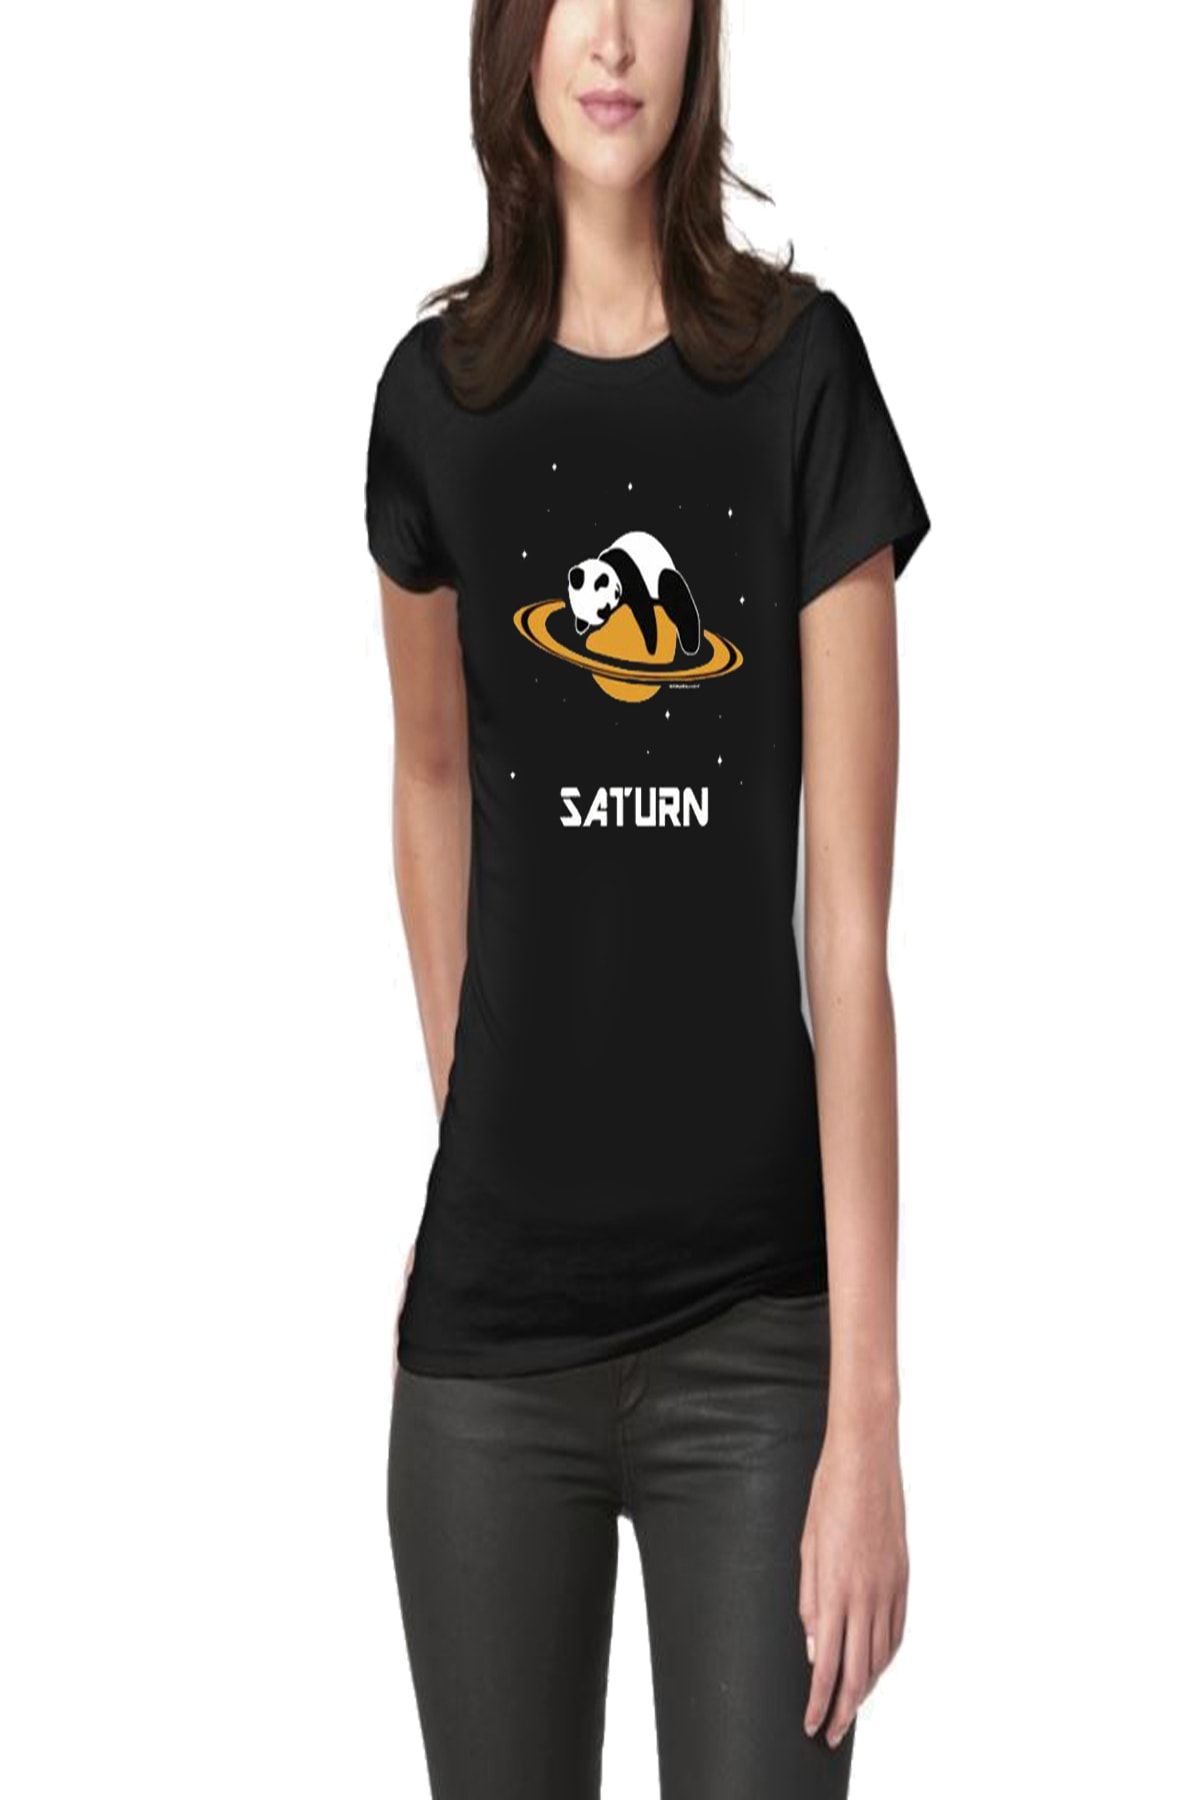 Art T-Shirt Panda Saturn Baskılı Tasarım Kadın Tişört